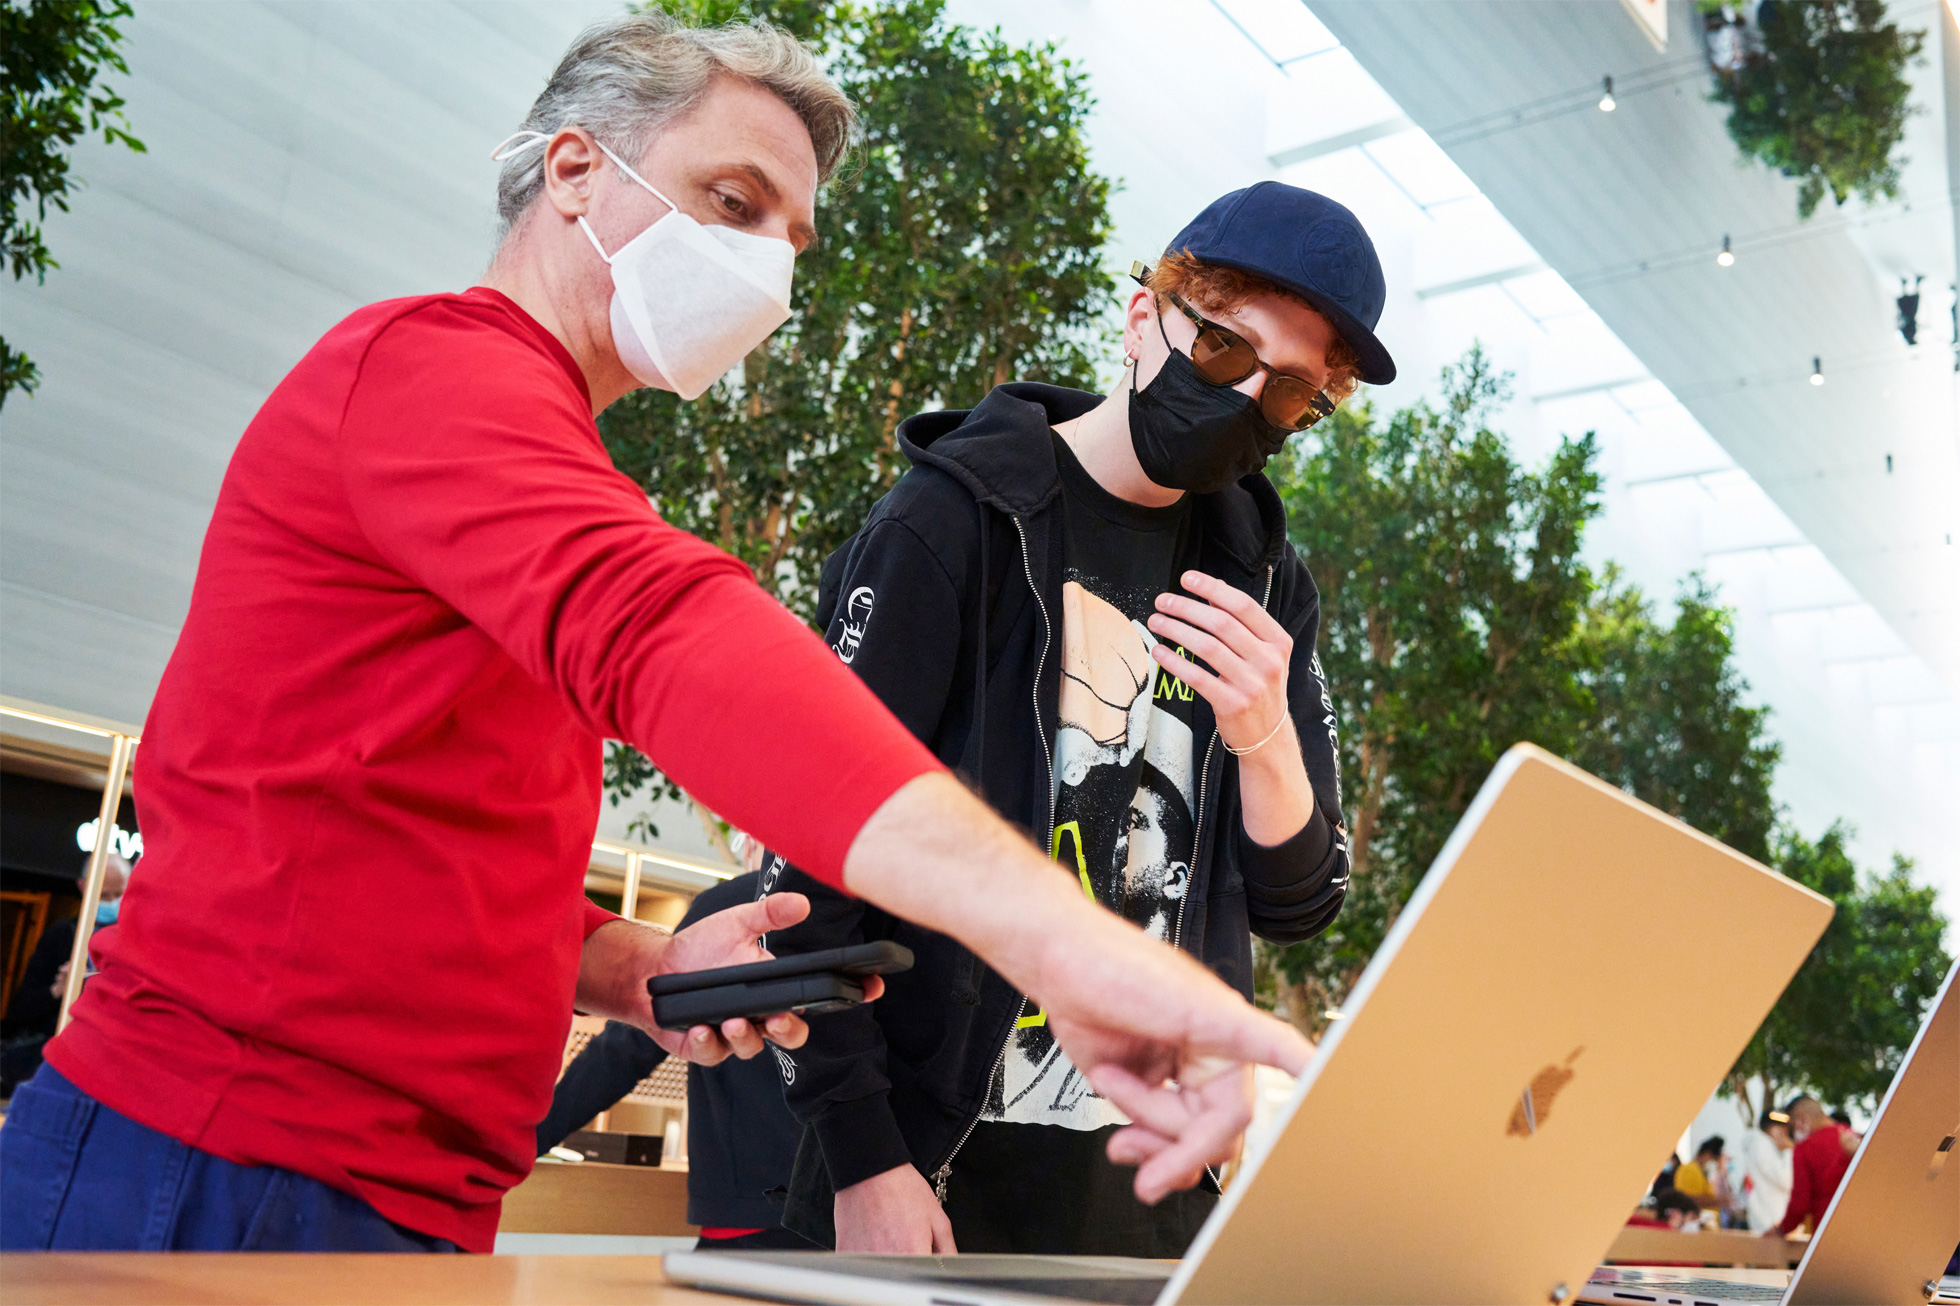 Apple The Grove 於洛杉磯開幕！《泰德拉索》演員到場同歡 | Apple Store, Apple The Grove, 蘋果商店, 蘋果零售店 | iPhone News 愛瘋了